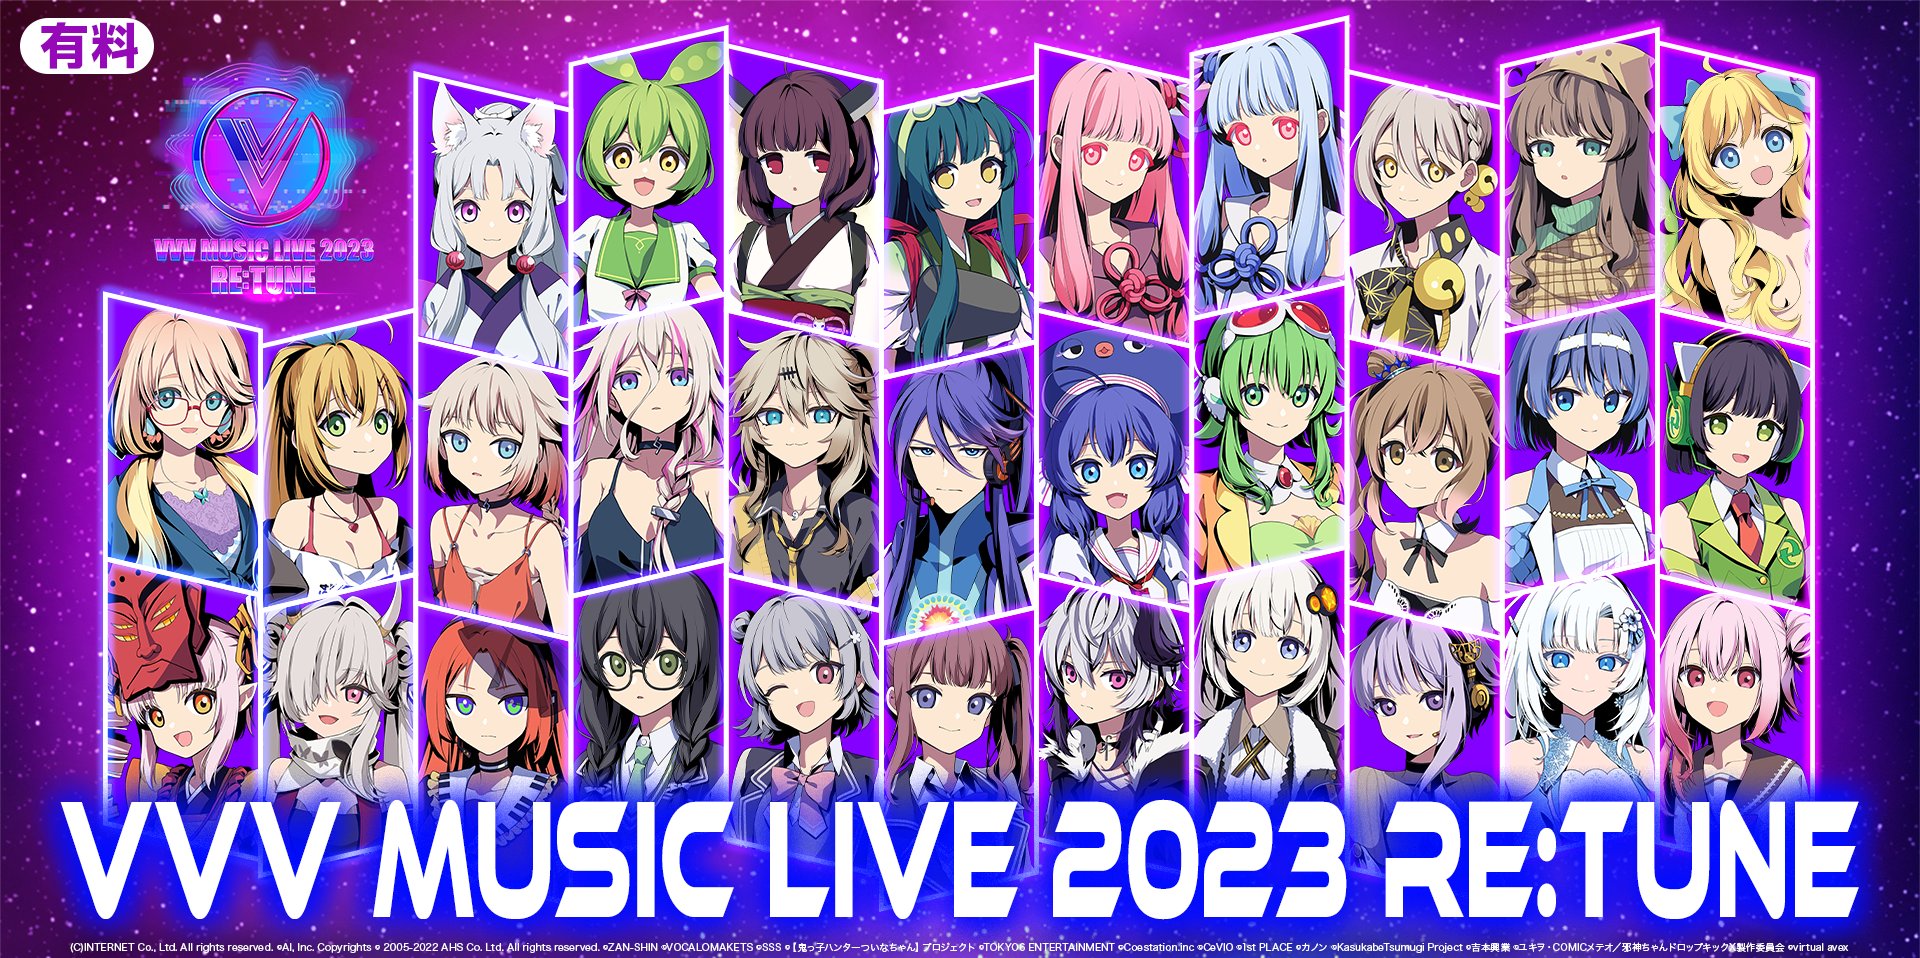 【EVENT INFO】昨年6月にIA/OИEも出演したバーチャルミュージックライブ『VVV MUSIC LIVE 2023』再配信決定!!